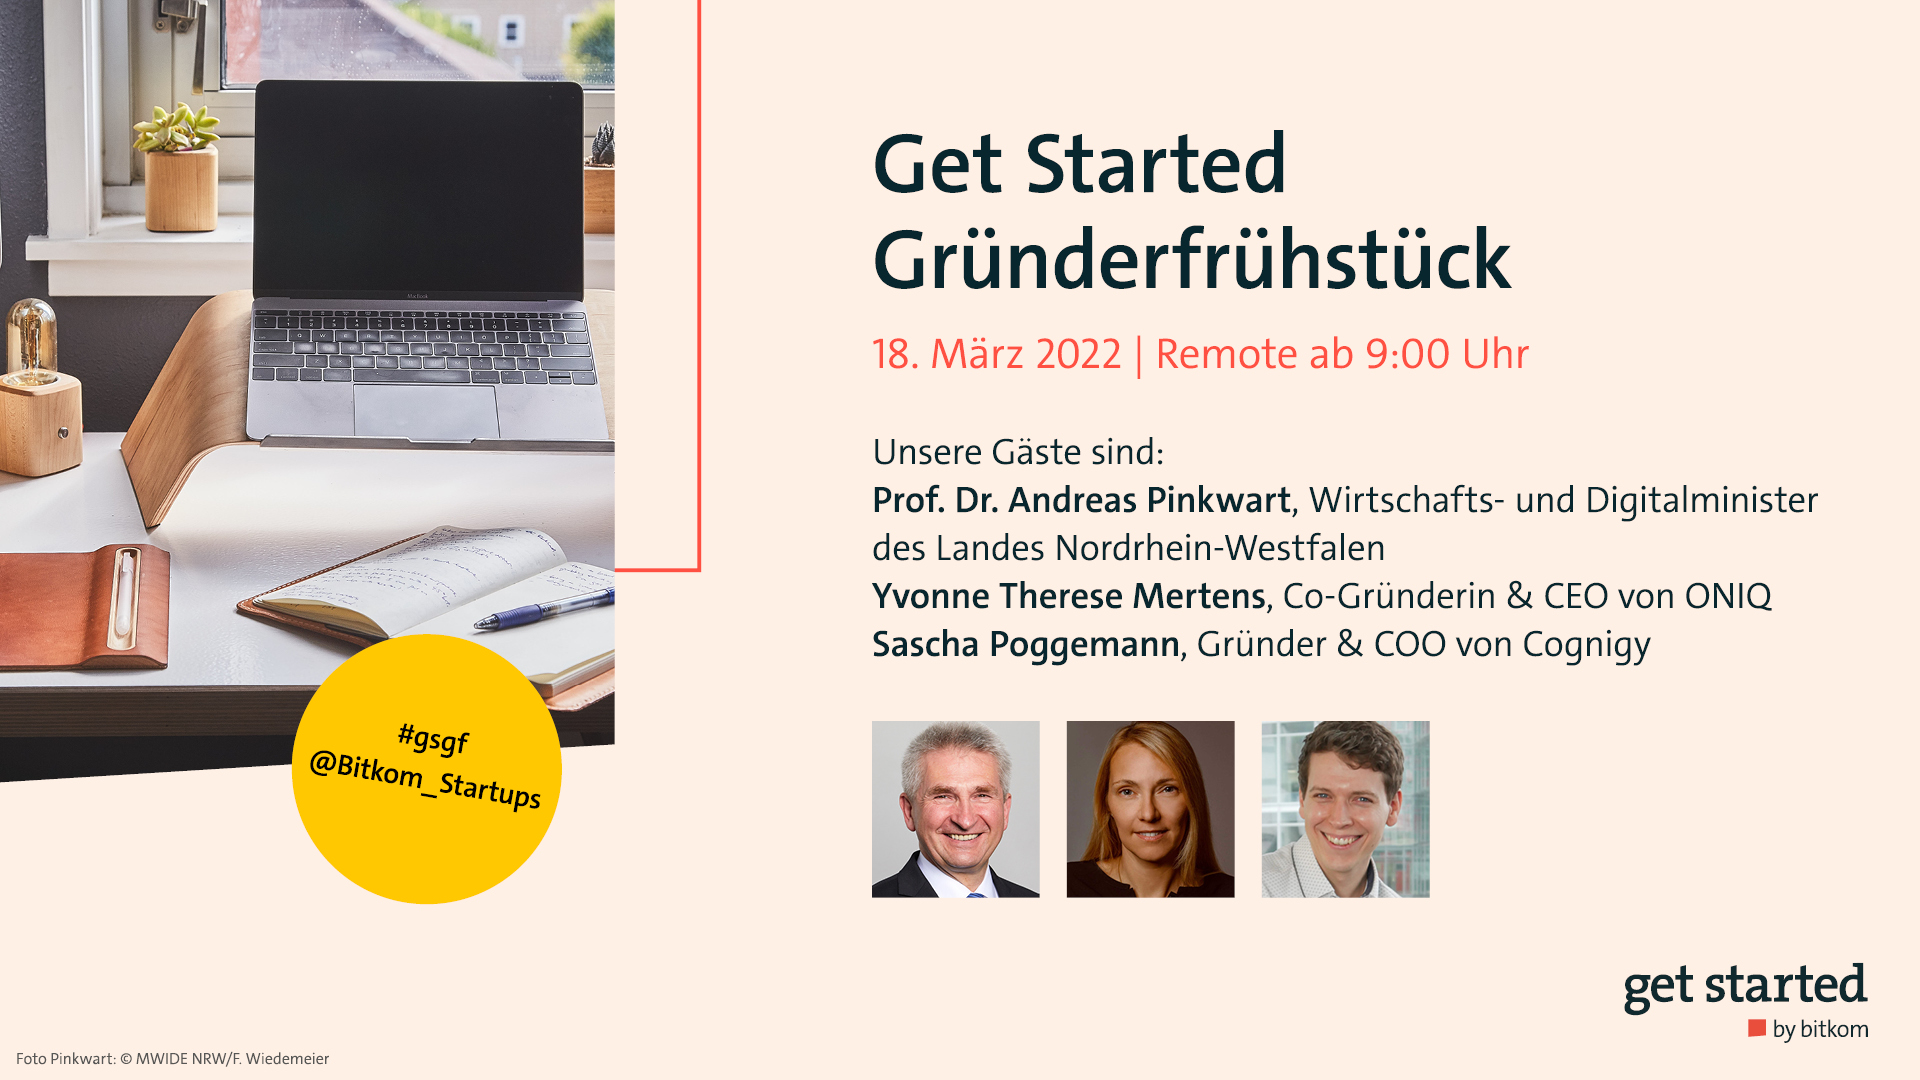 Get Started Gründerfrühstück mit Prof. Dr. Andreas Pinkwart